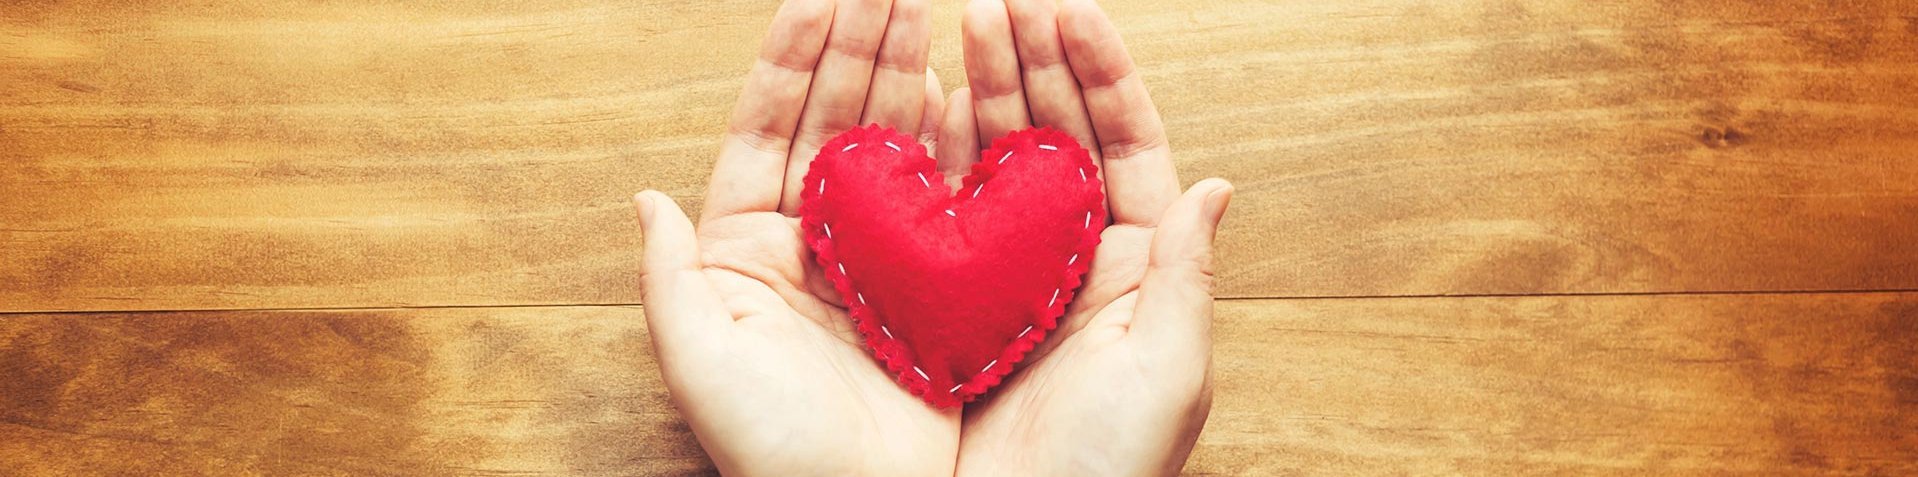 Symbolbild: Hände halten ein Herz aus rotem Filz